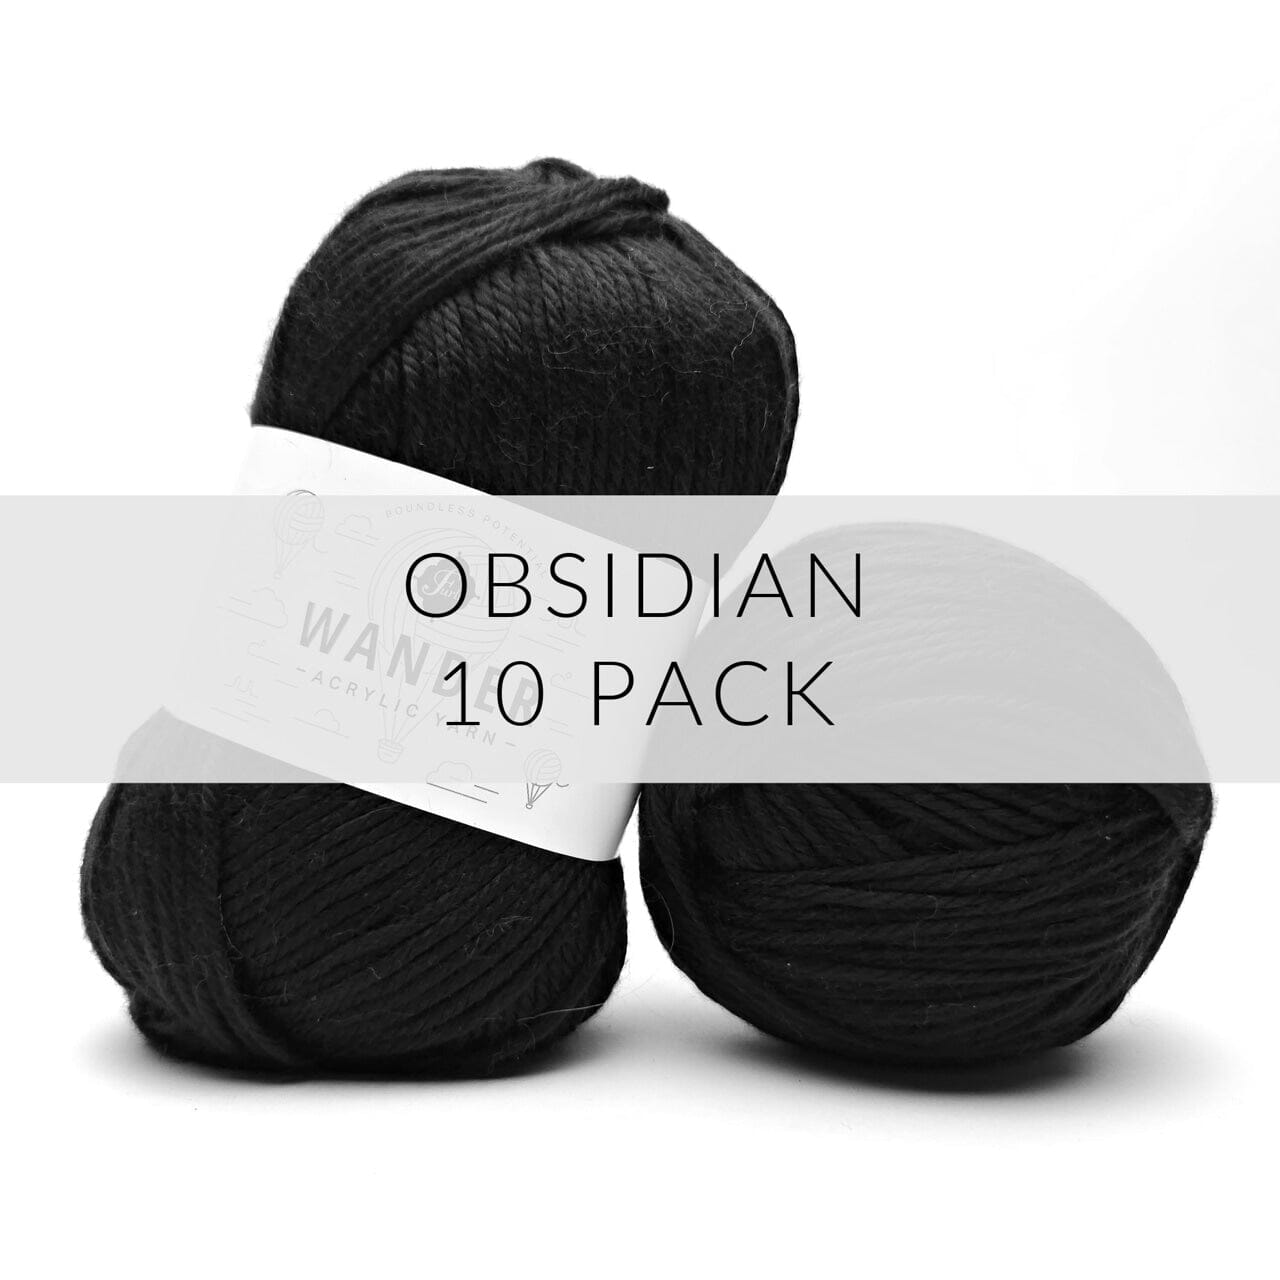 10 Pack Wander Acrylic Yarn Yarn FurlsCrochet Obsidian 